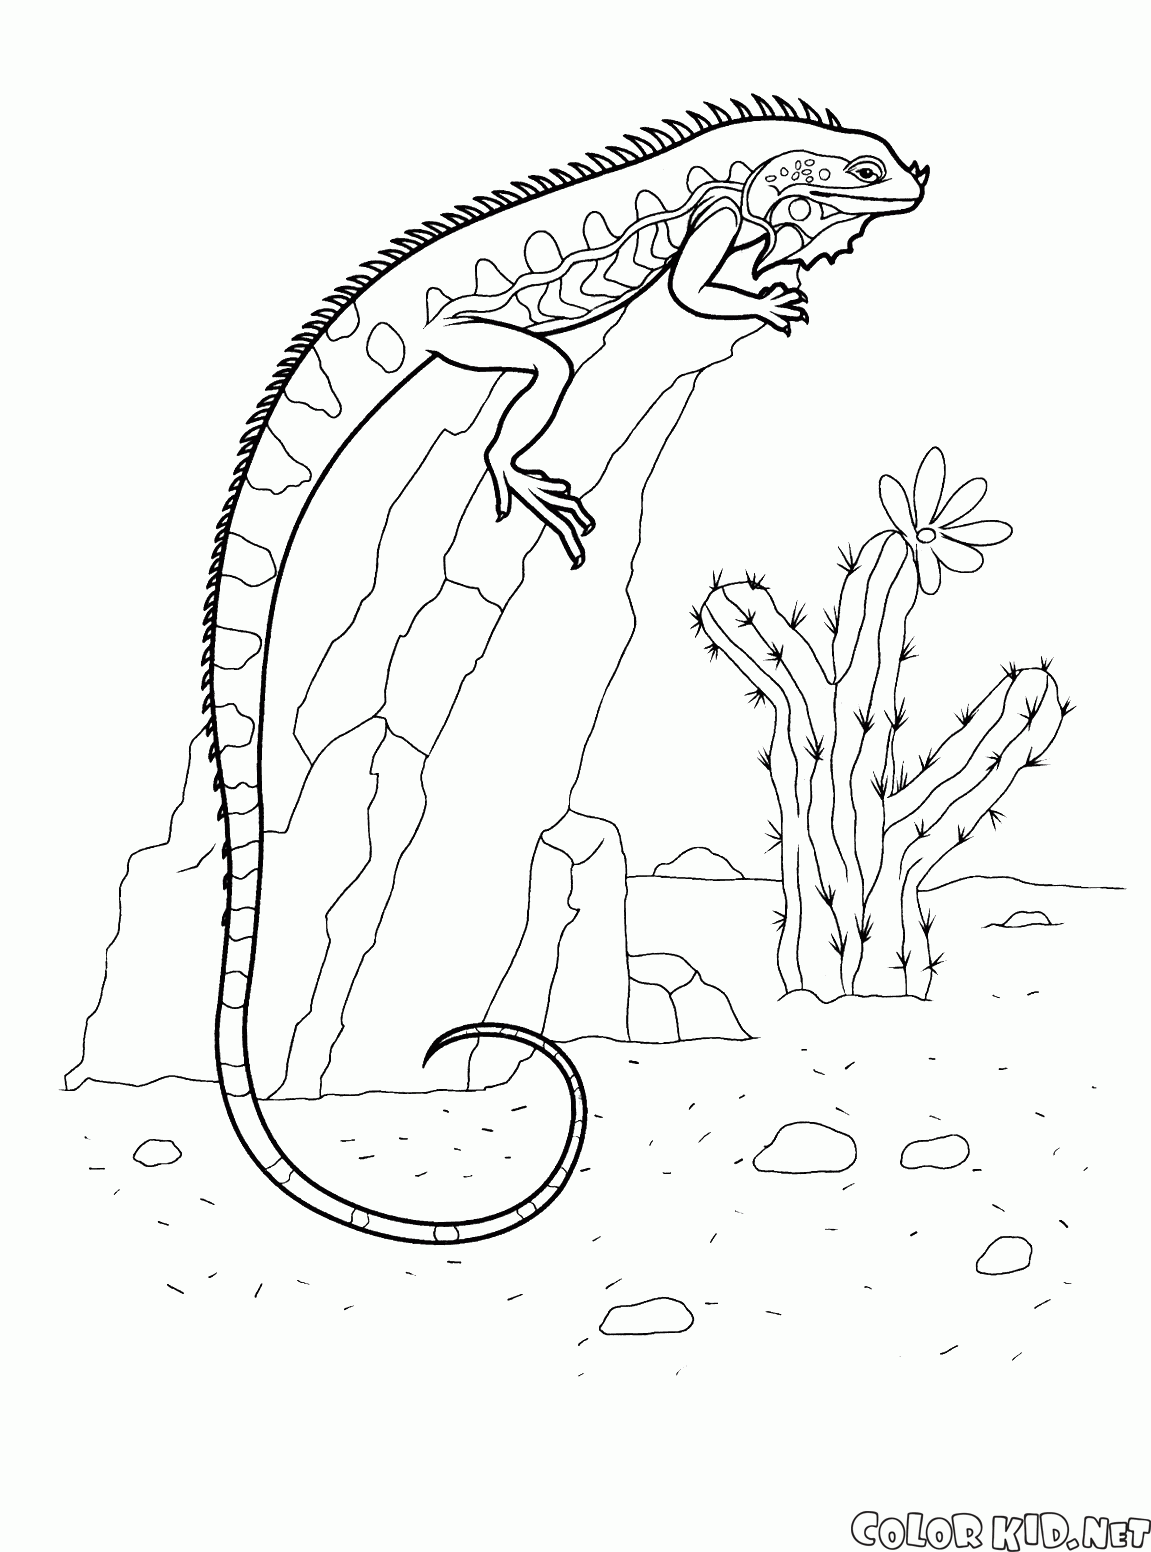 Dibujo para colorear - Iguana en una roca